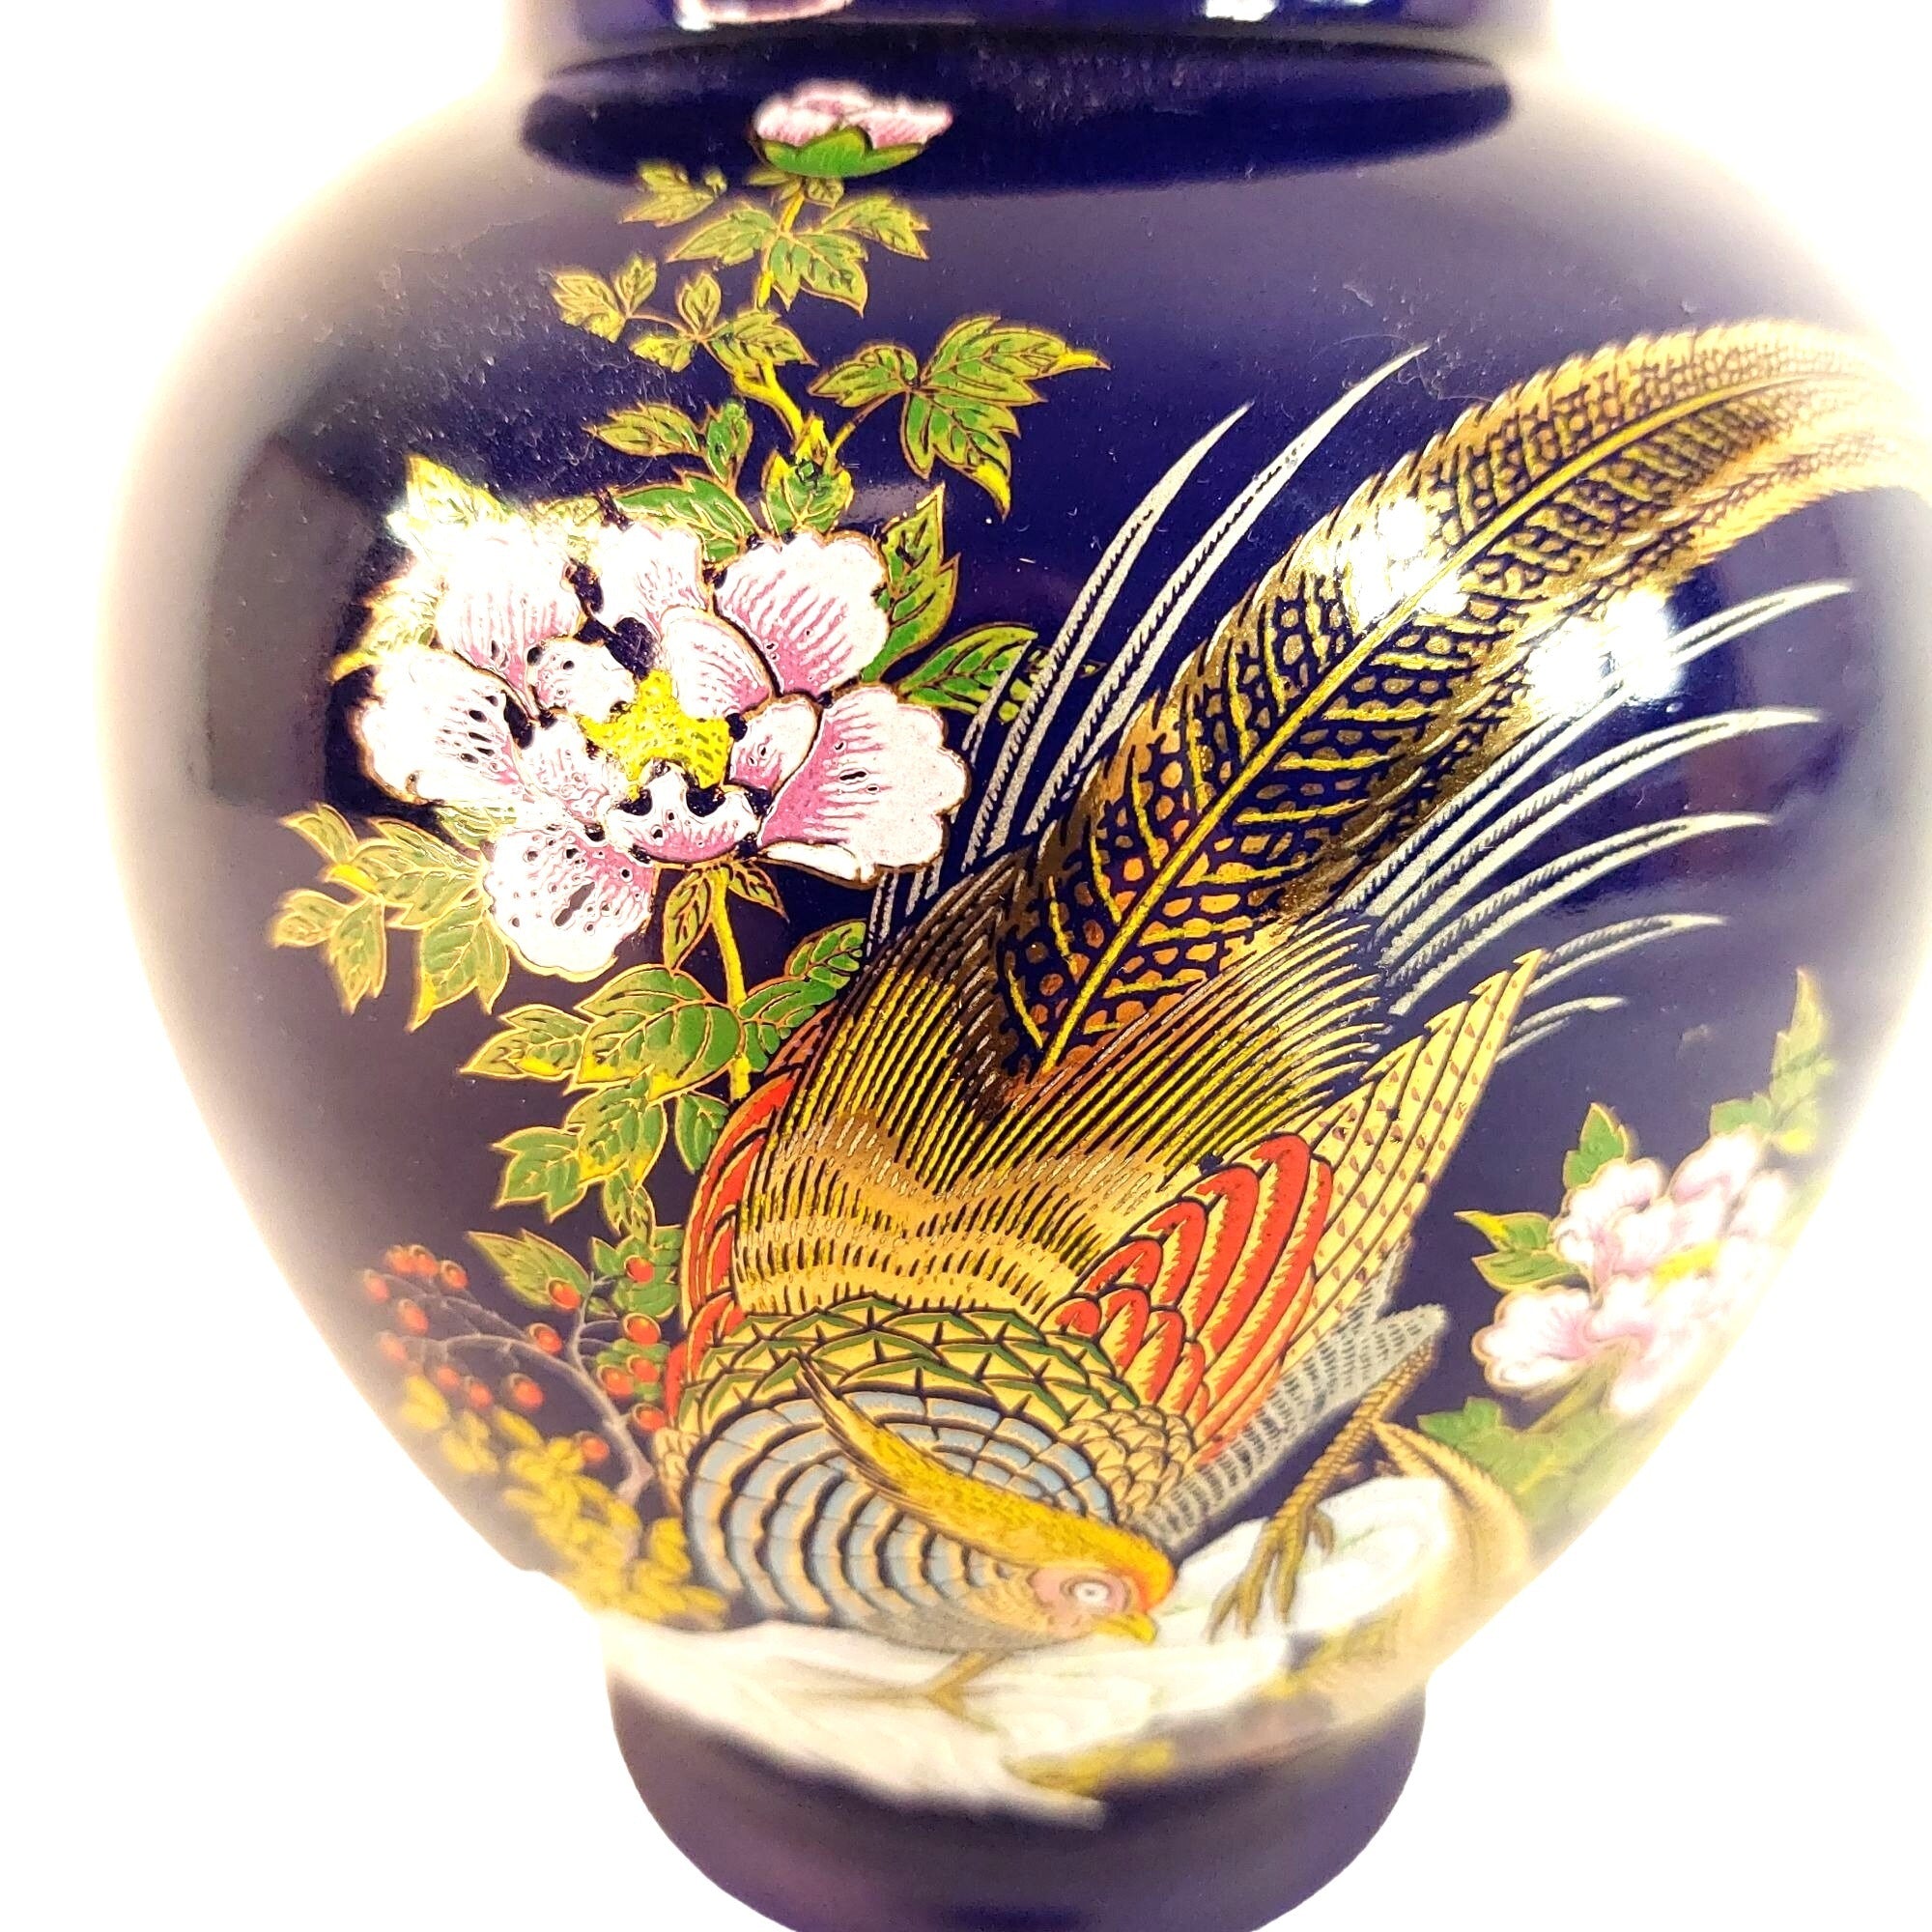 Jar Lidded Ginger Jar Asian-Inspired Pheasant Florals Vintage Home Decor 8.5"